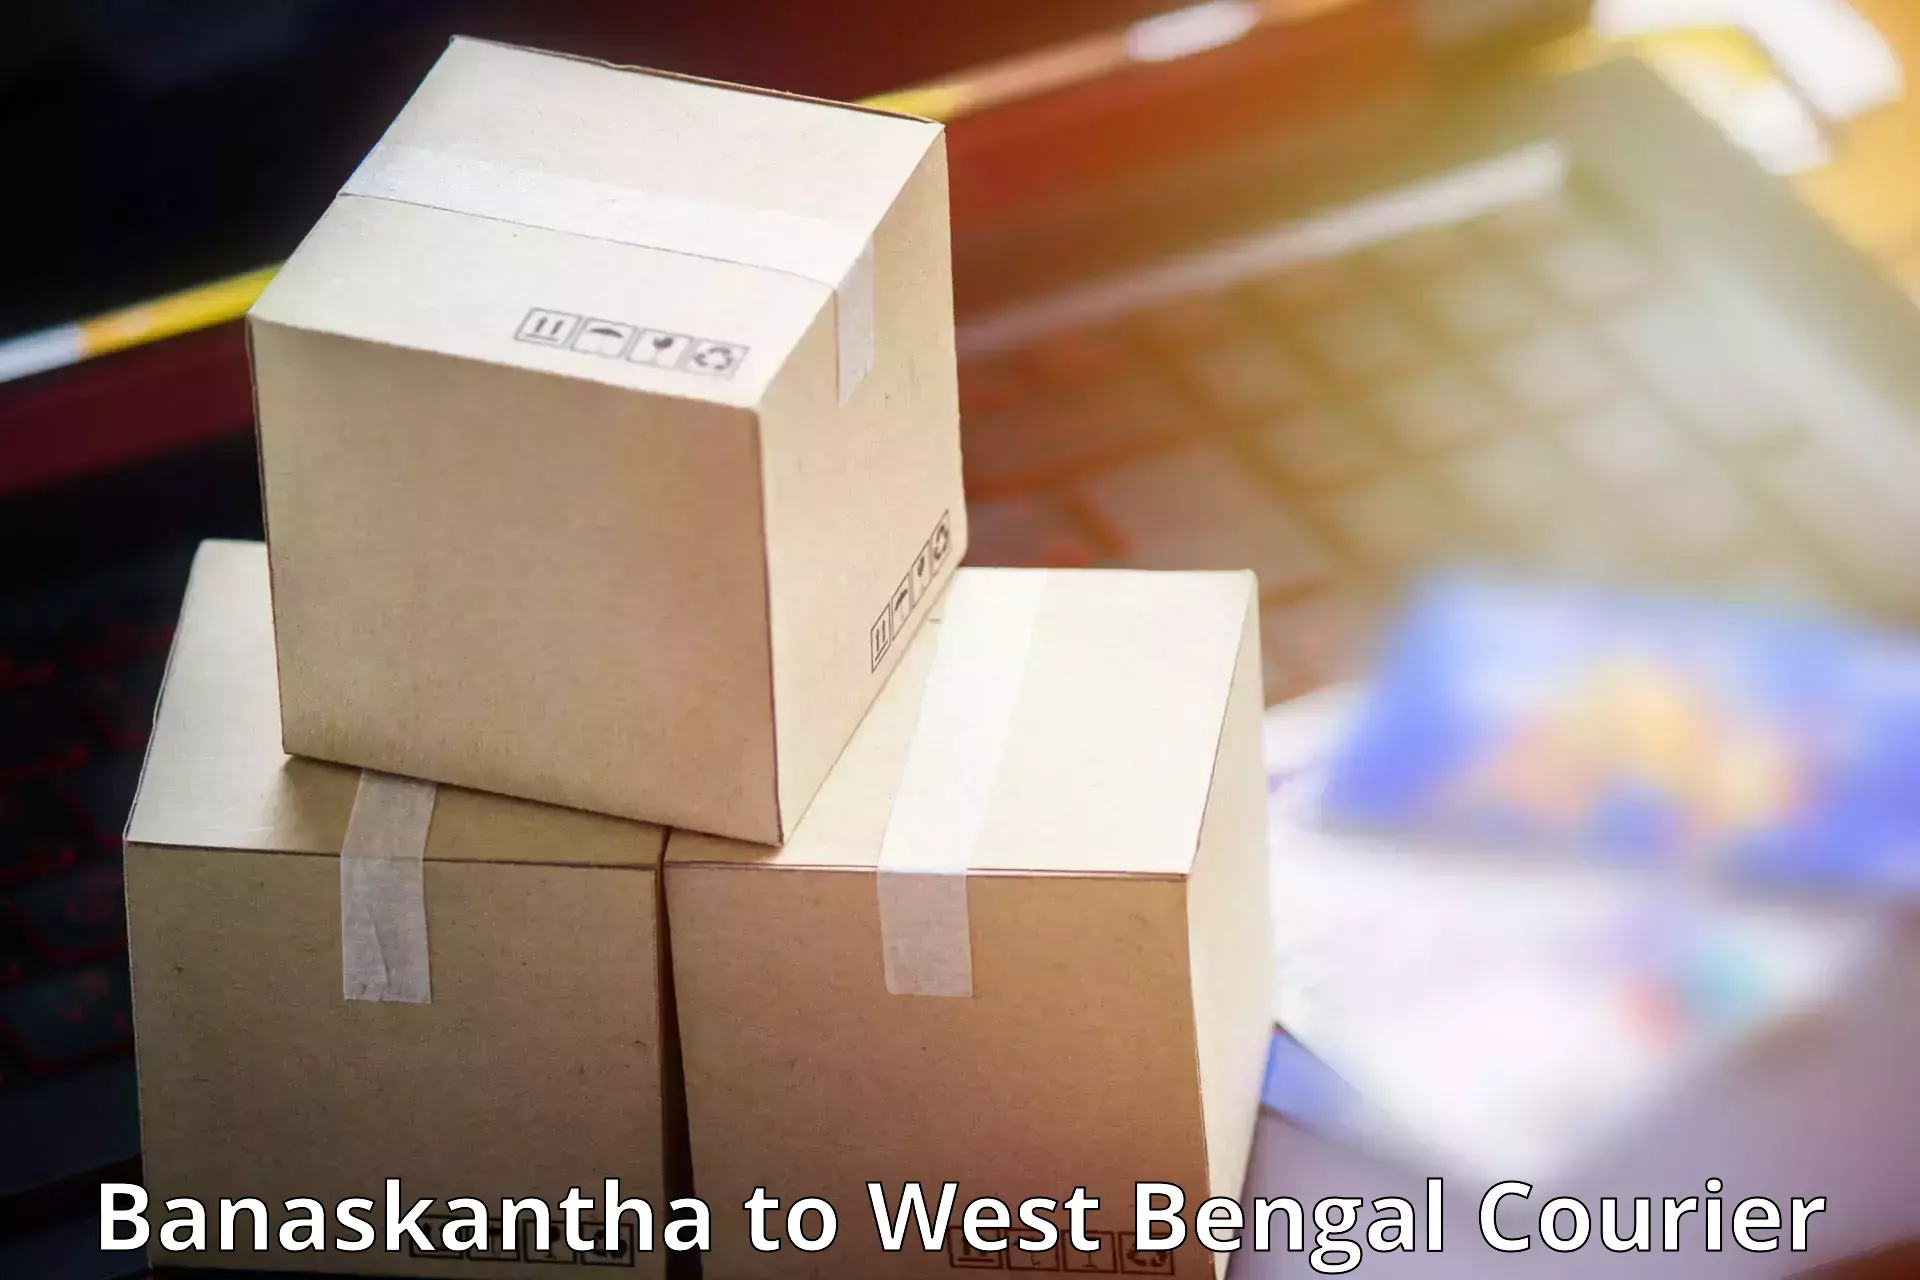 Express delivery capabilities Banaskantha to Kandi